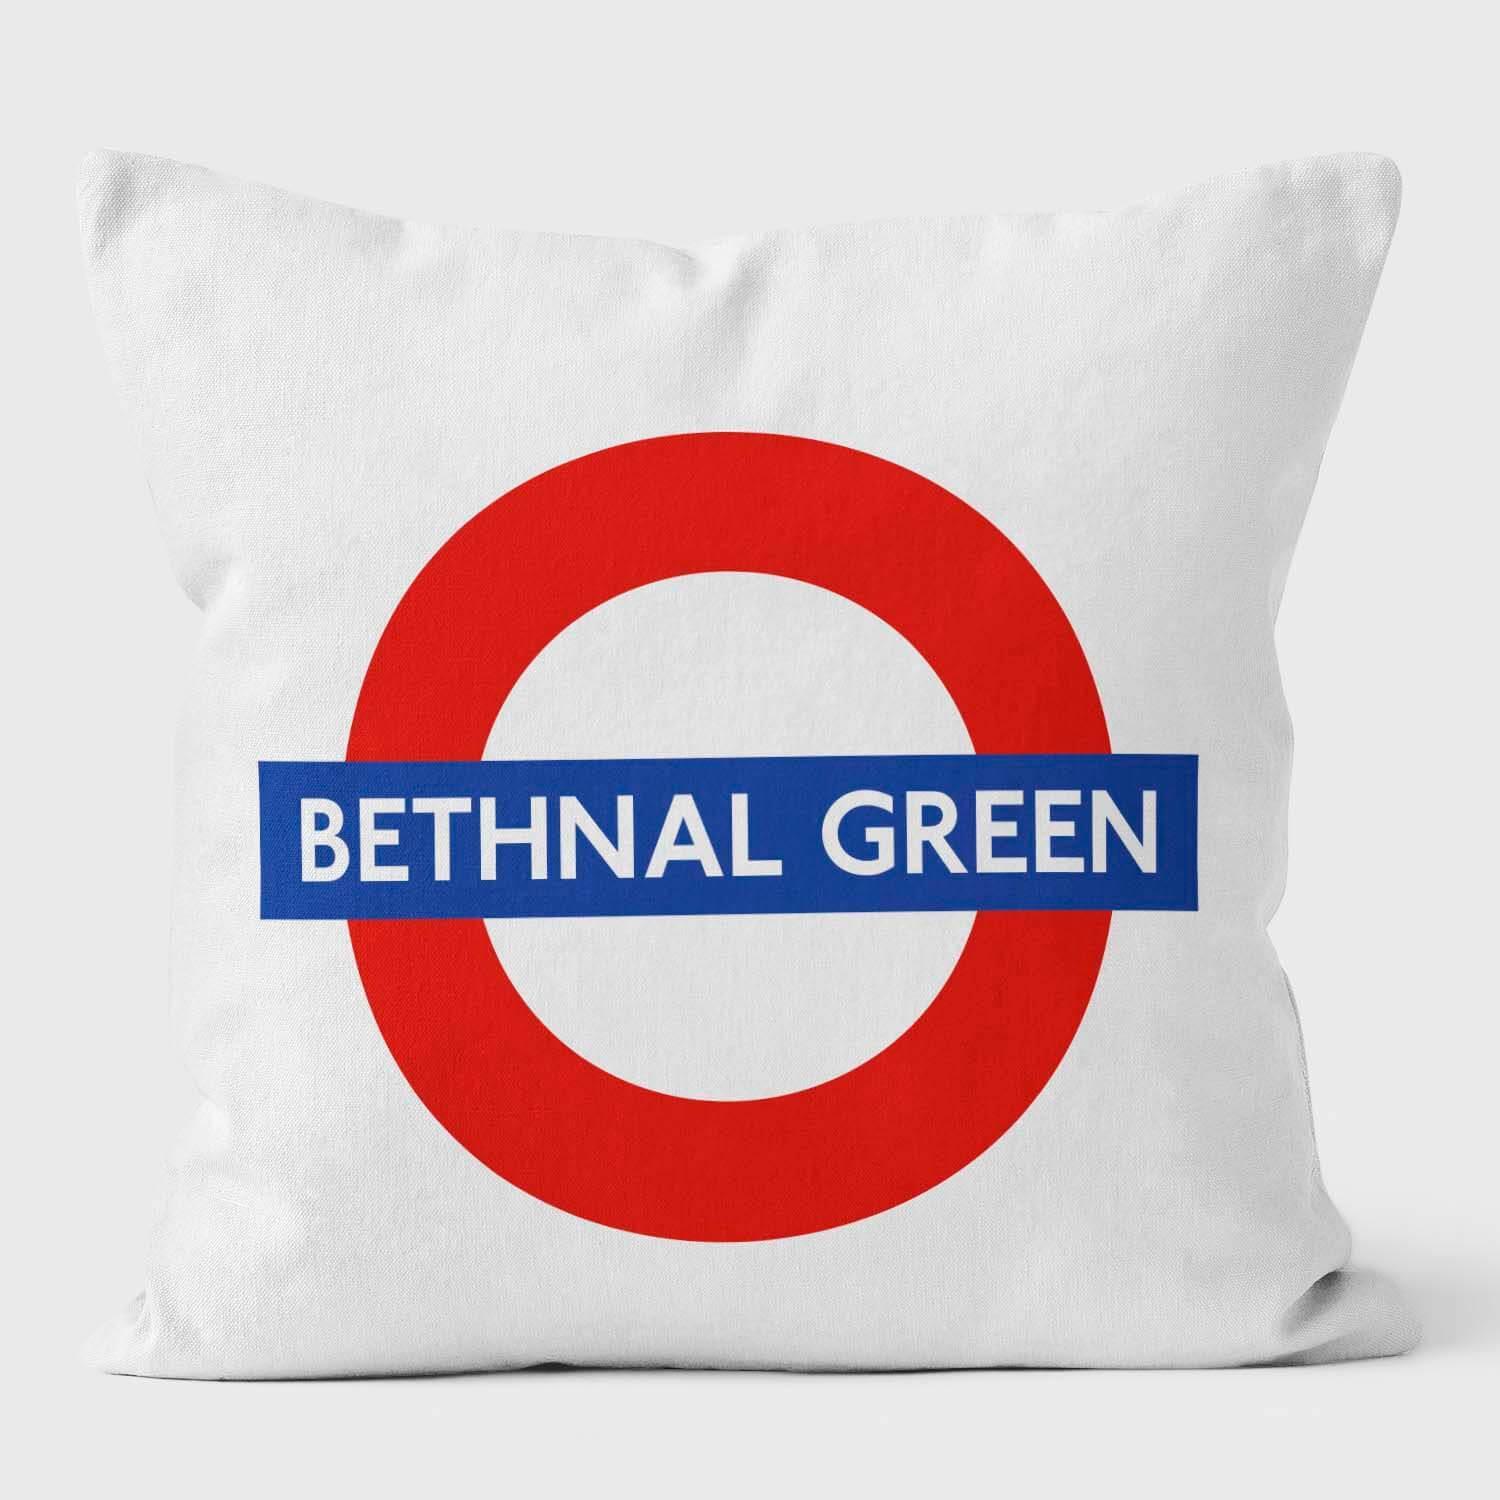 Bethenal Green London Underground Tube Station Roundel Cushion - Handmade Cushions UK - WeLoveCushions